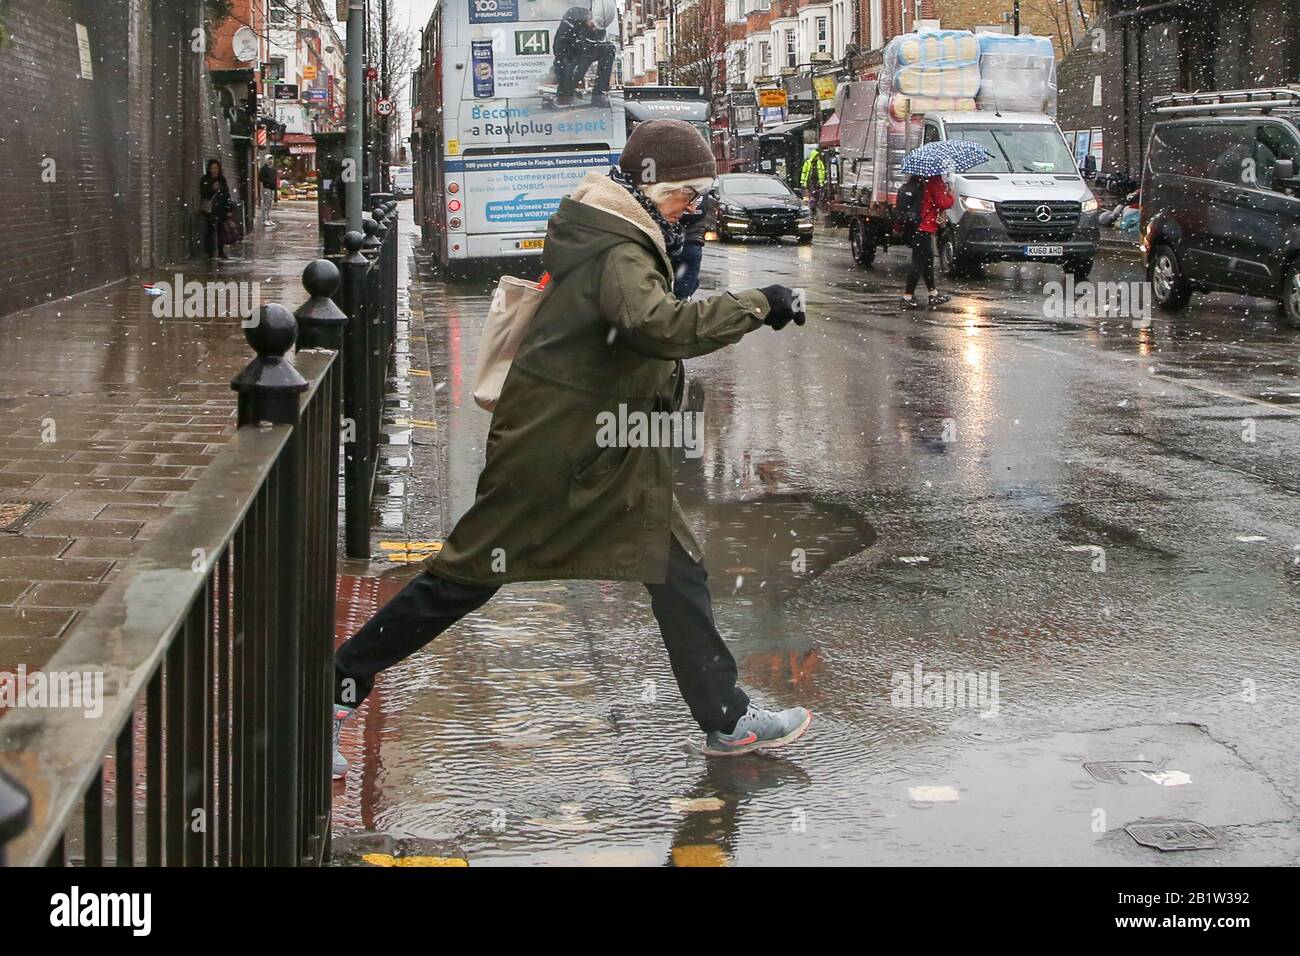 Londra, Regno Unito. 27th Feb, 2020. Una donna salta sopra una pozza d'acqua durante una nevicata nel nord di Londra. Credit: Dinendra Haria/Sopa Images/Zuma Wire/Alamy Live News Foto Stock